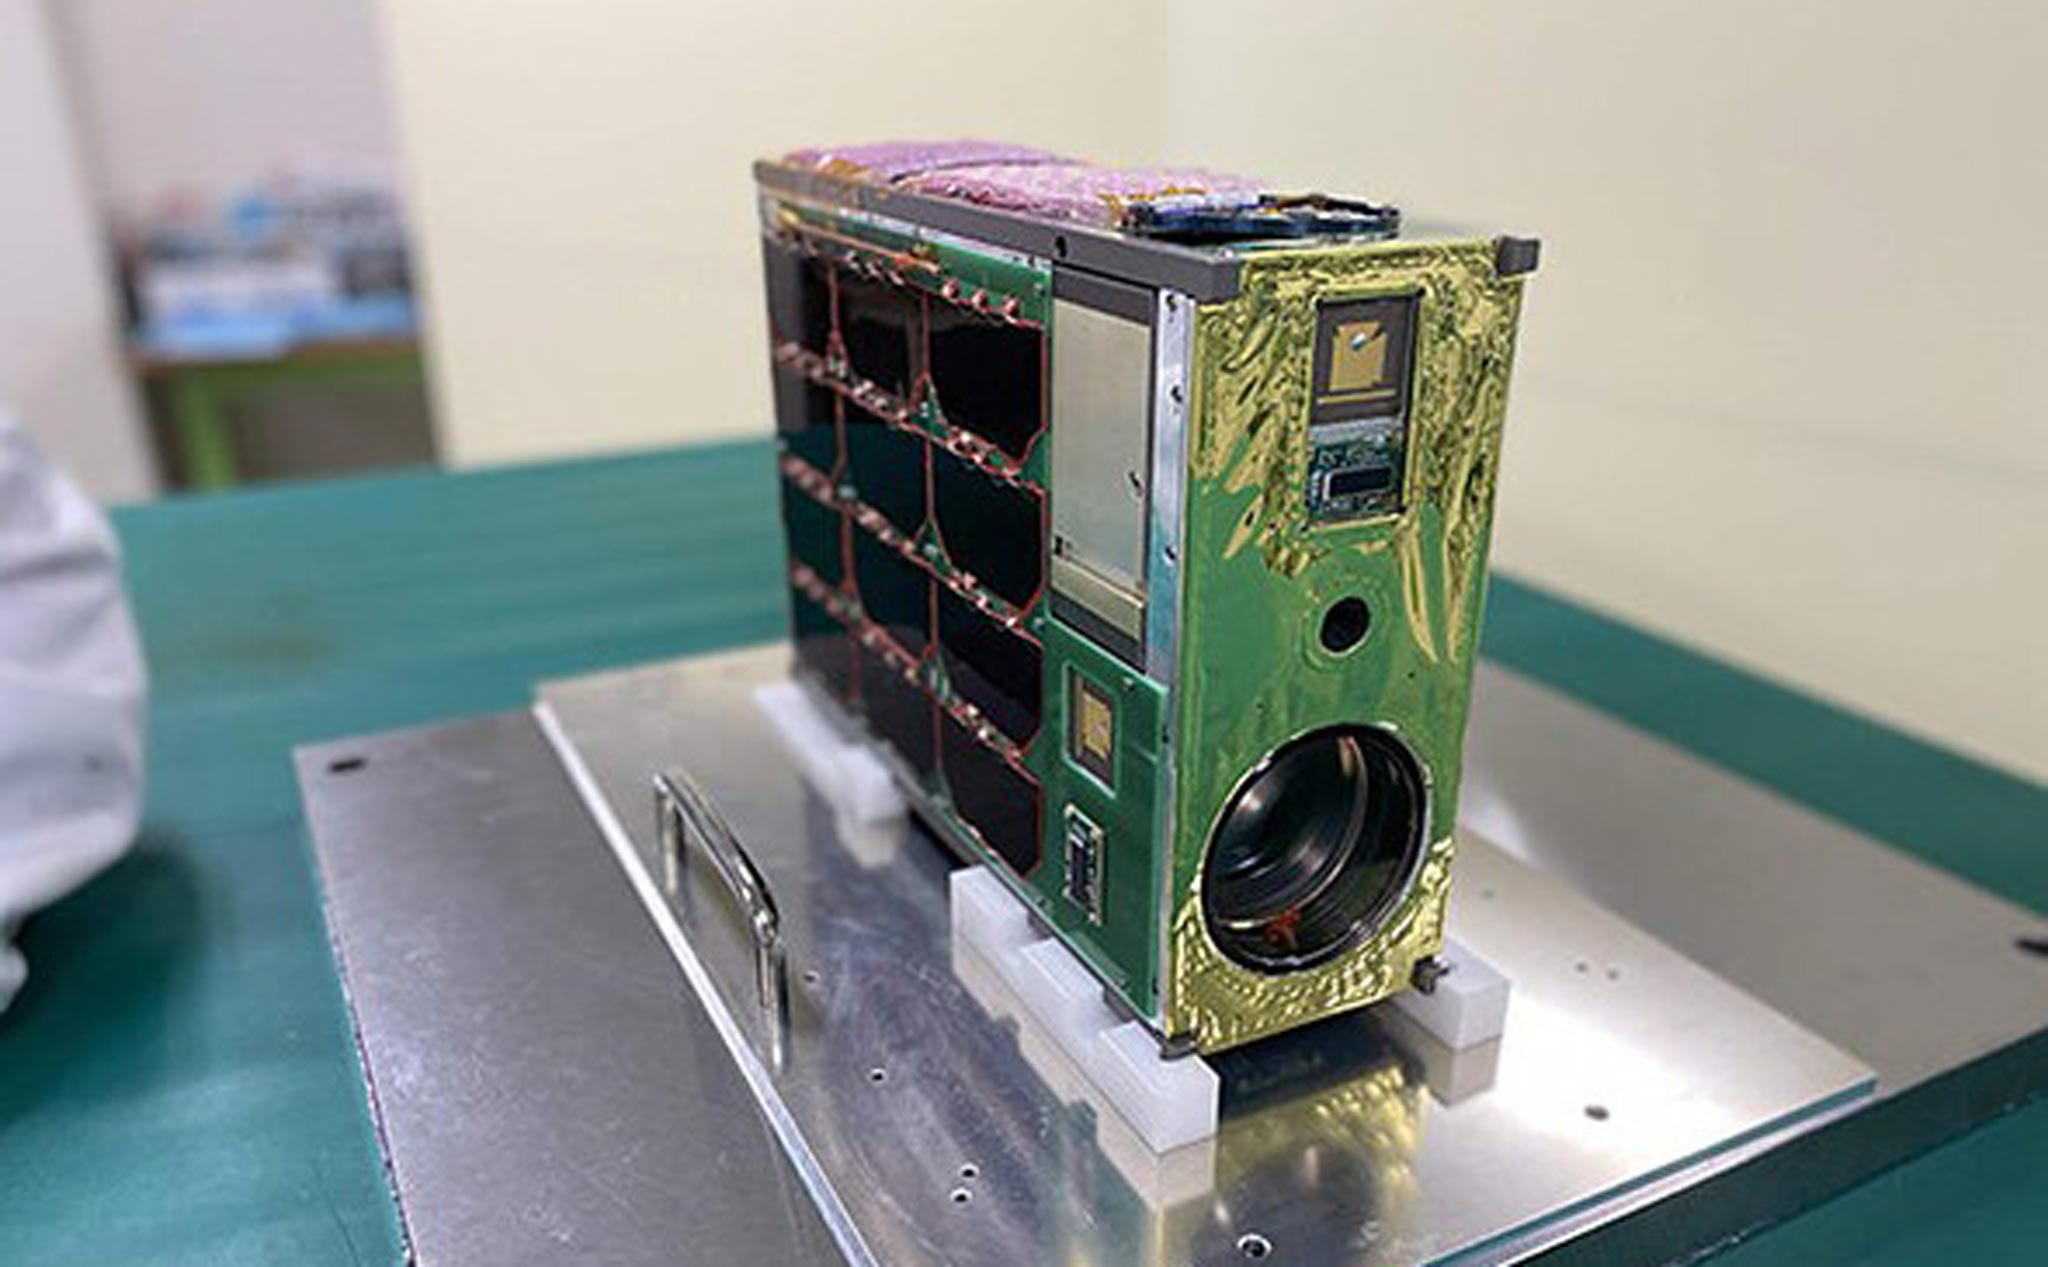 Pentax DA* 300mm f4 ED SDM được "độ" lại để gắn trên vệ tinh siêu nhỏ Kitsun 6 đã đi vào không gian